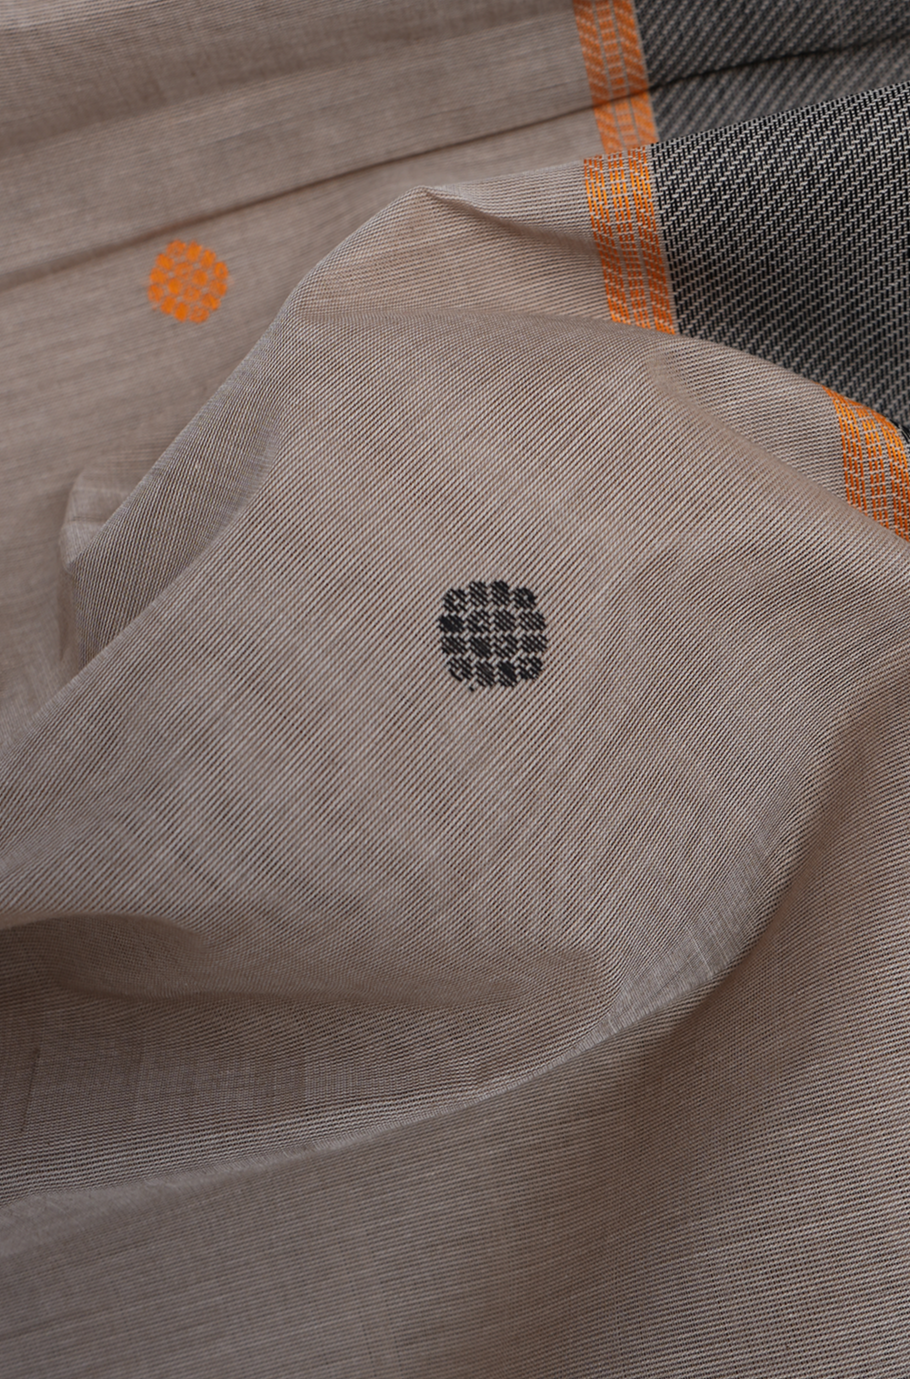 Floral Threadwork Buttas Khaki Coimbatore Cotton Saree